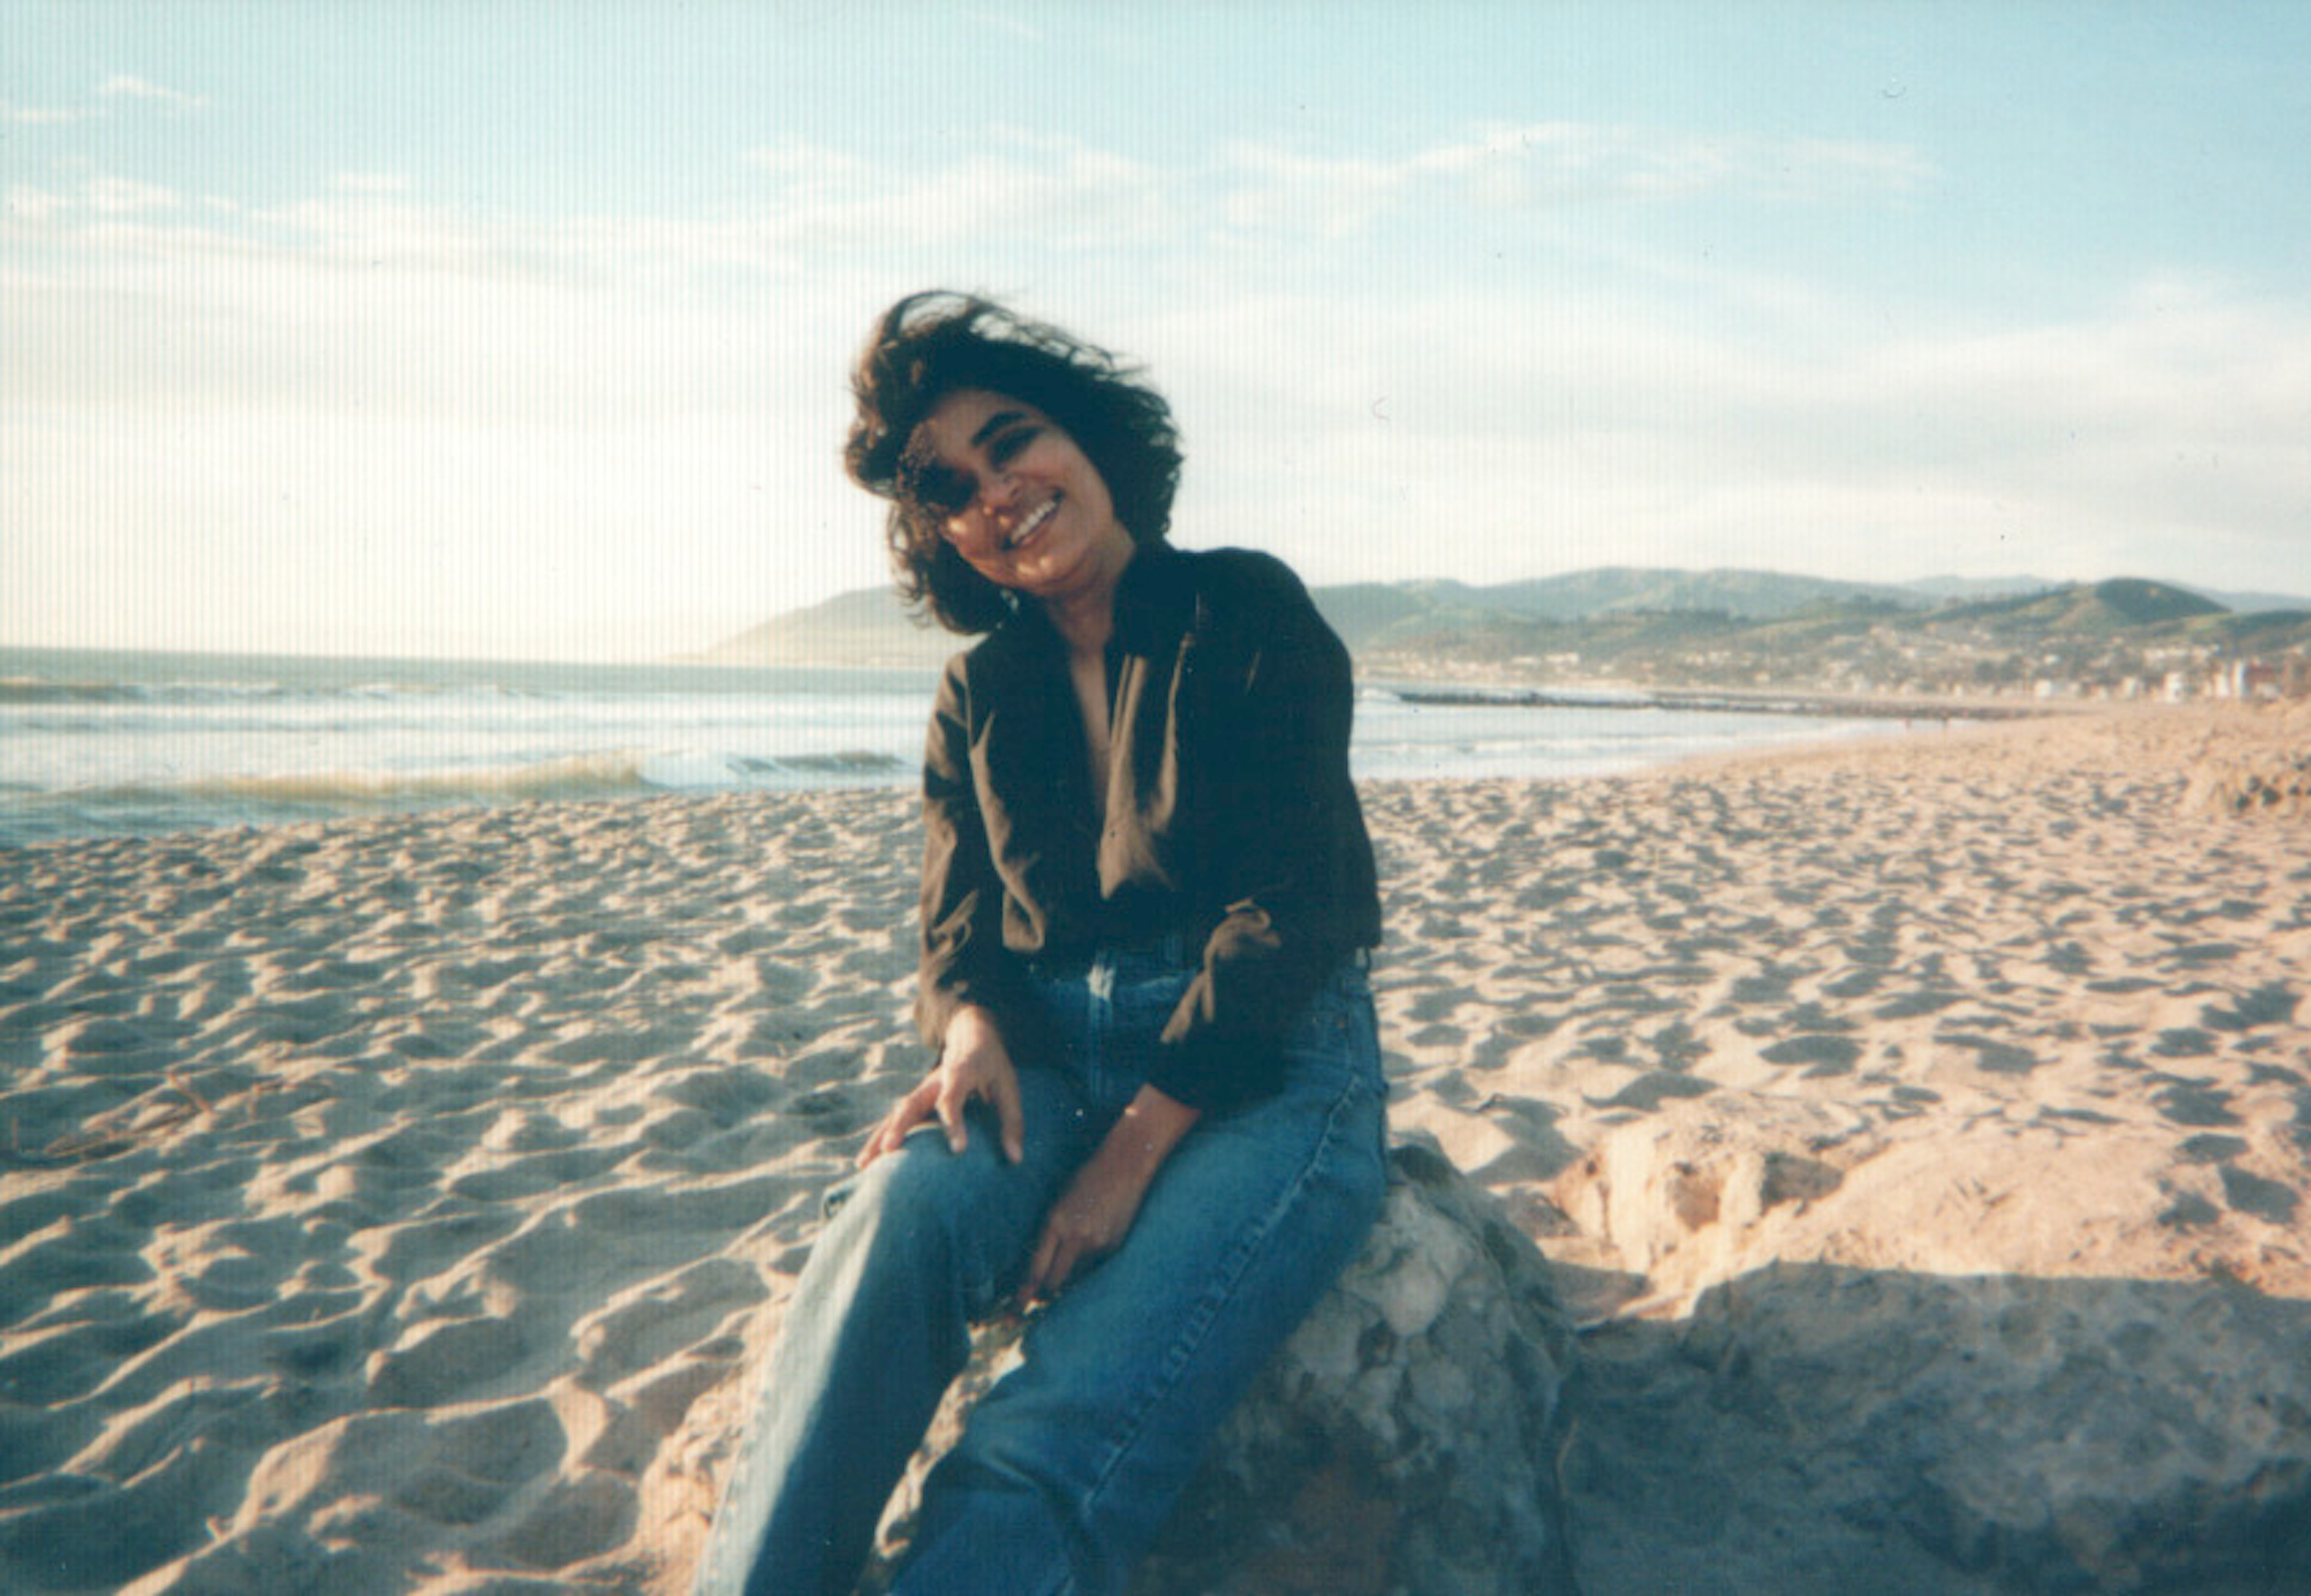 Ruth Vanita on the beach, Ventura, California, 1997. Photo courtesy of Ruth Vanita.